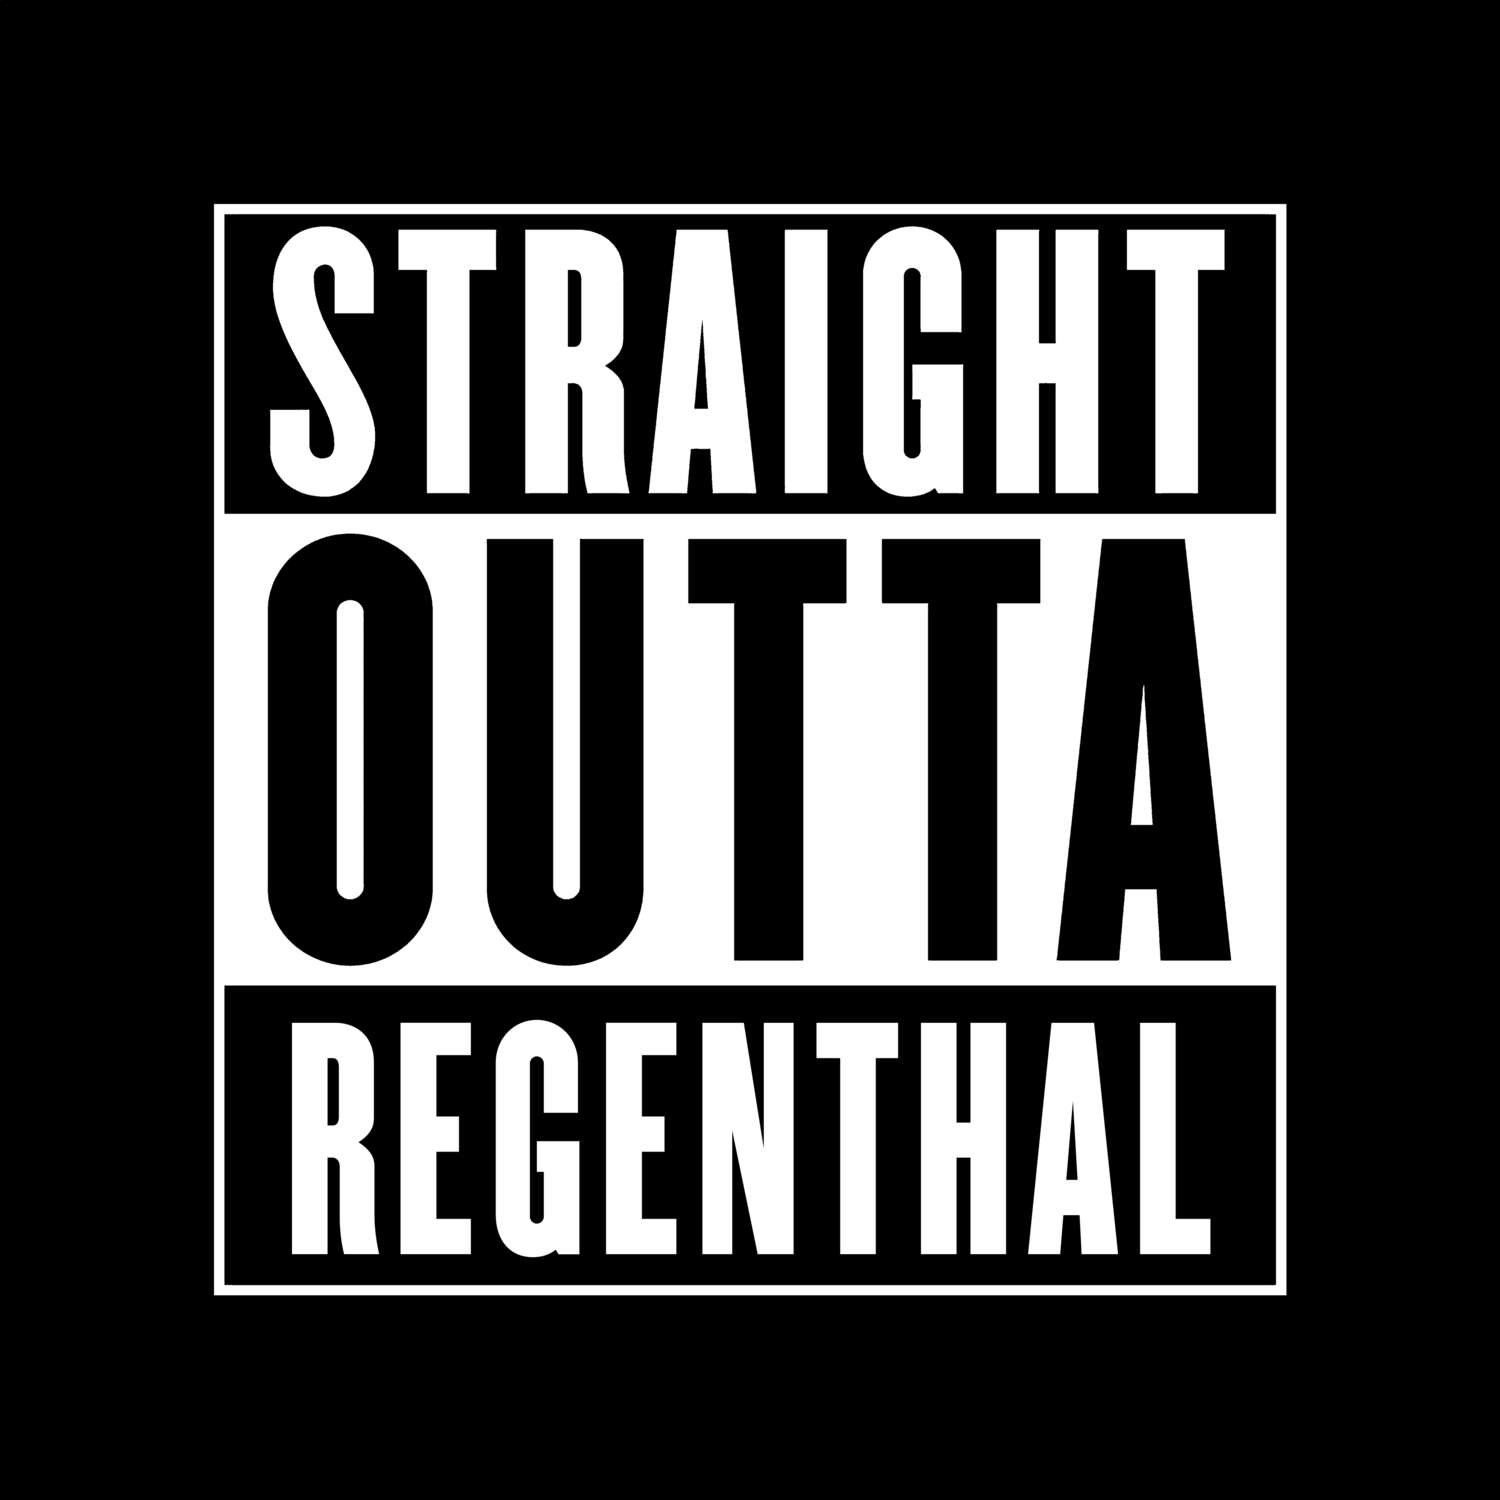 Regenthal T-Shirt »Straight Outta«